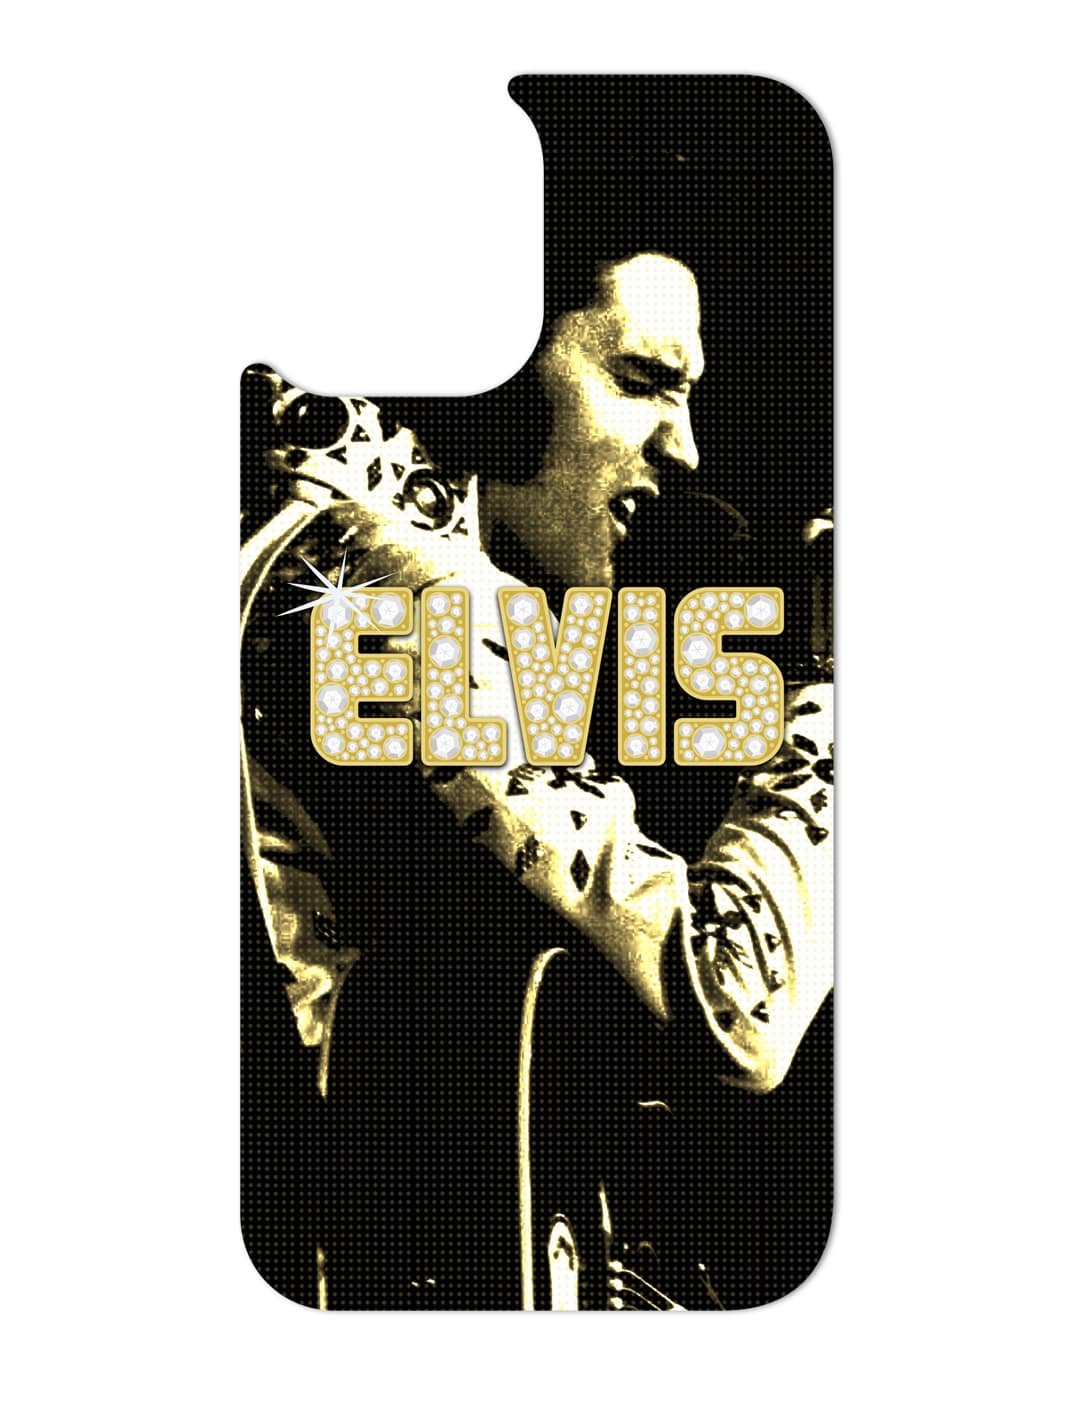 Phone Swap Pack - Elvis Presley 2